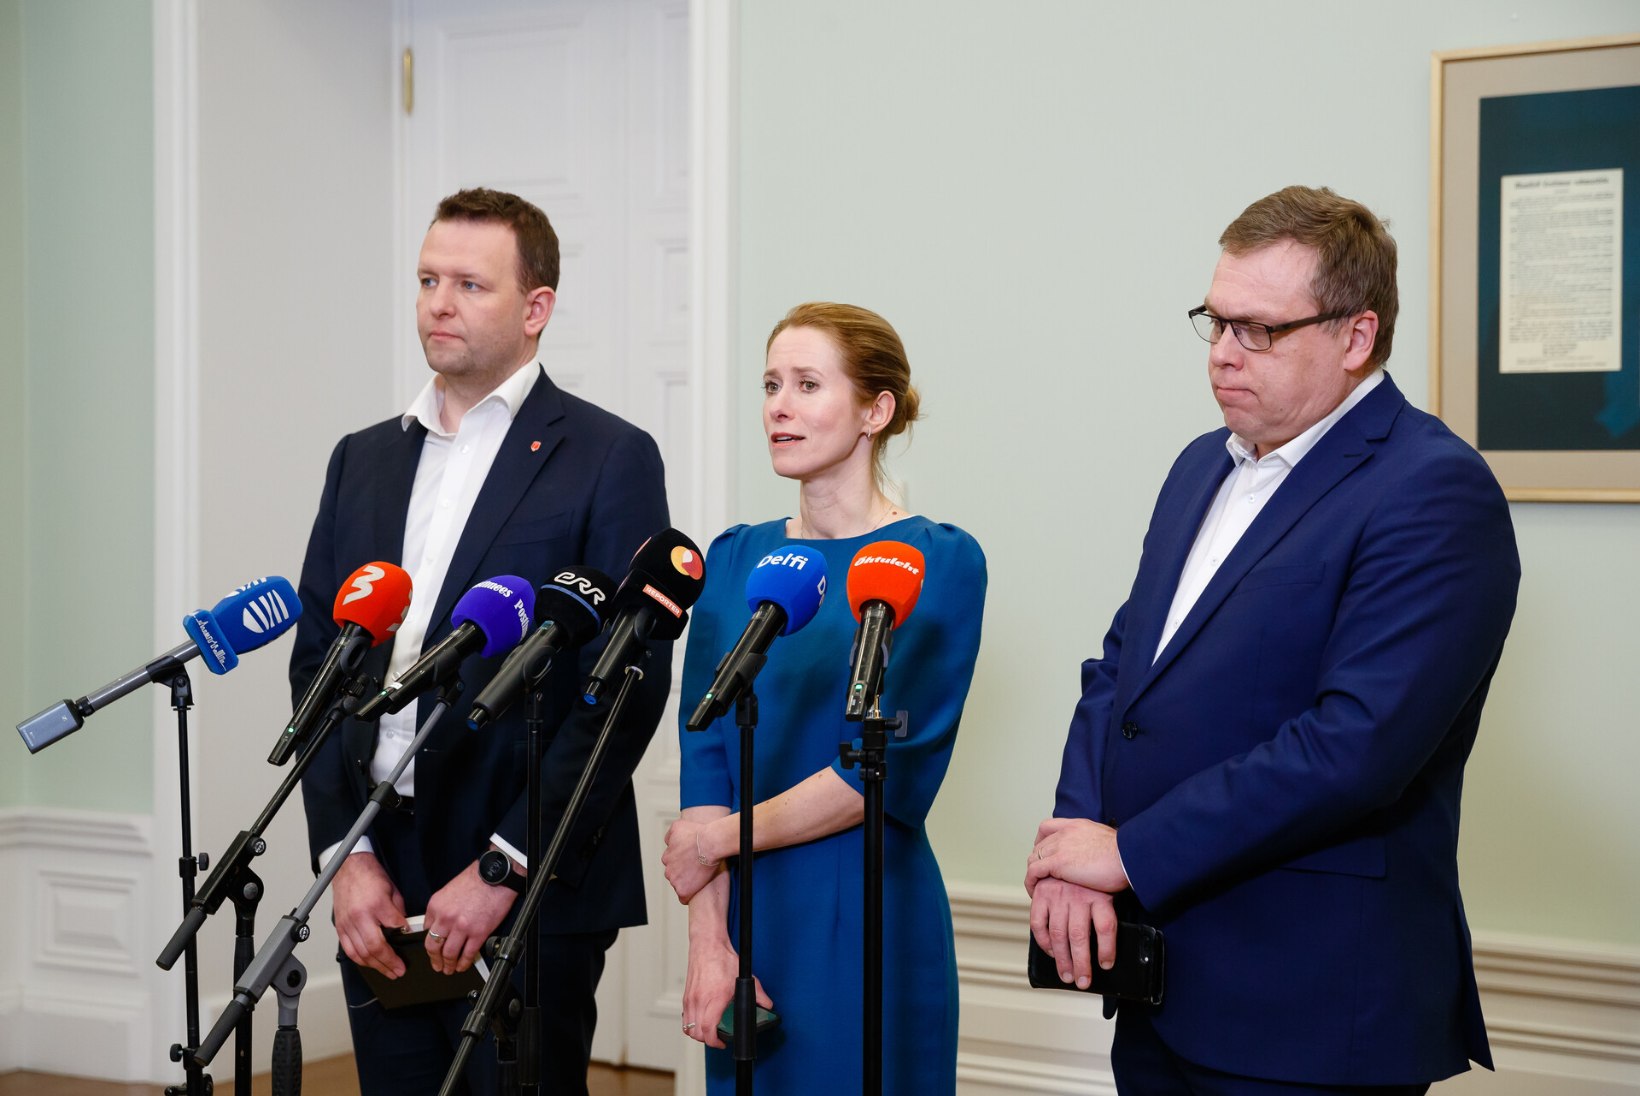 Uus valitsus ja uued maksud: uued ministrid on kinnitatud! Maksusüsteem Eestis muutub!